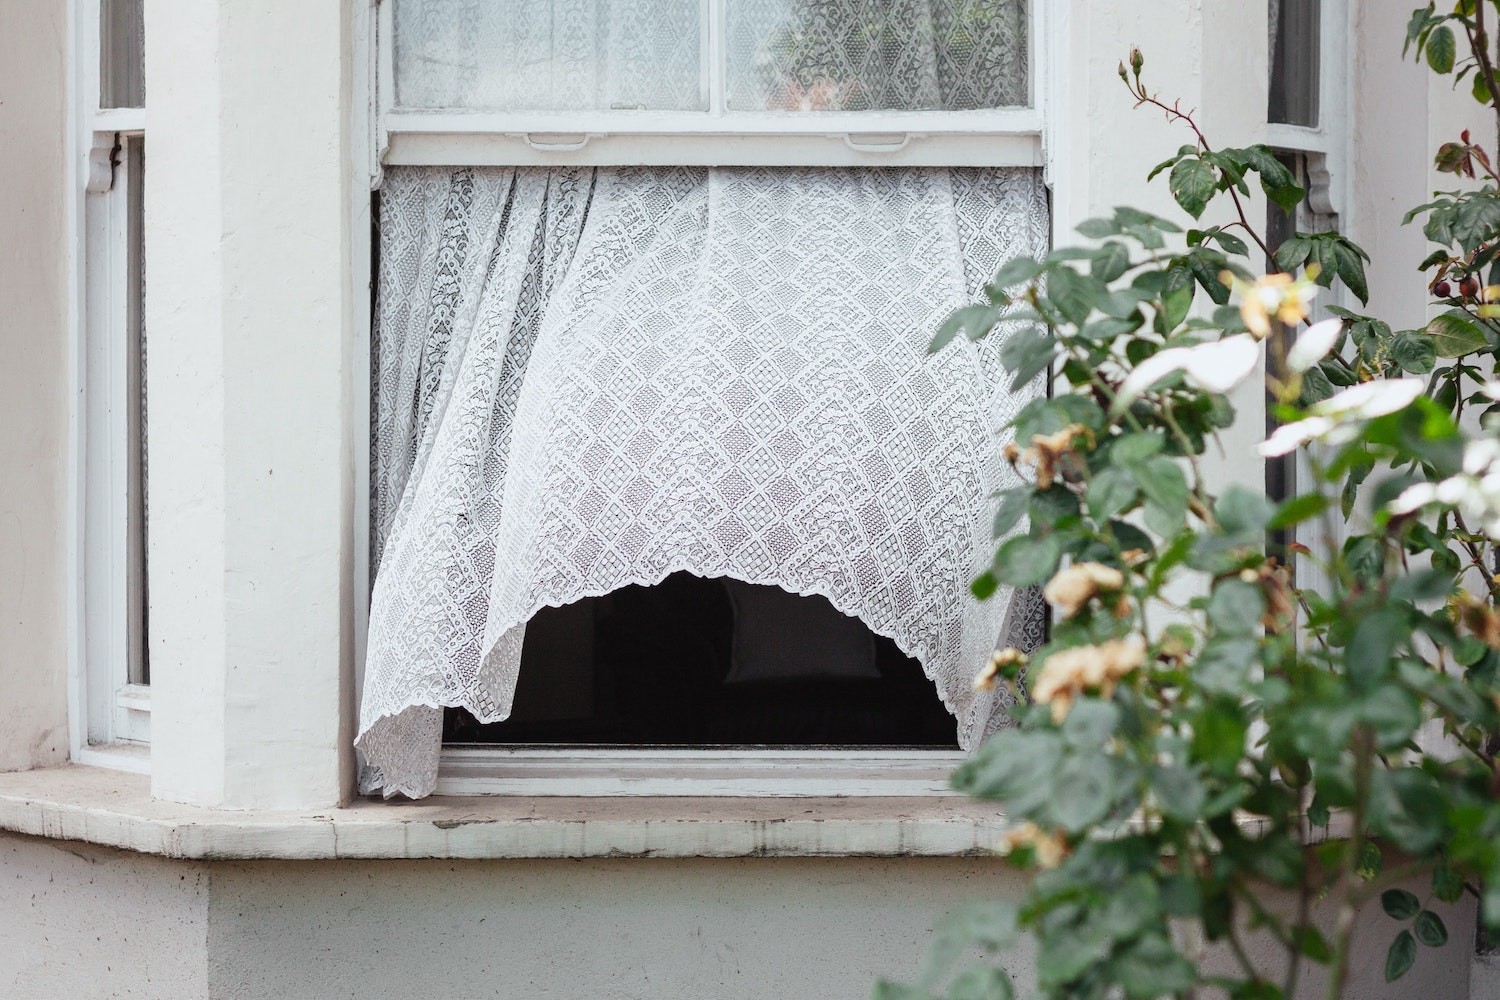 Portas e janelas devem ser abertas ao longo do dia para arejar a casa (Foto: Unsplash / Alistair MacRobert / CreativeCommons)